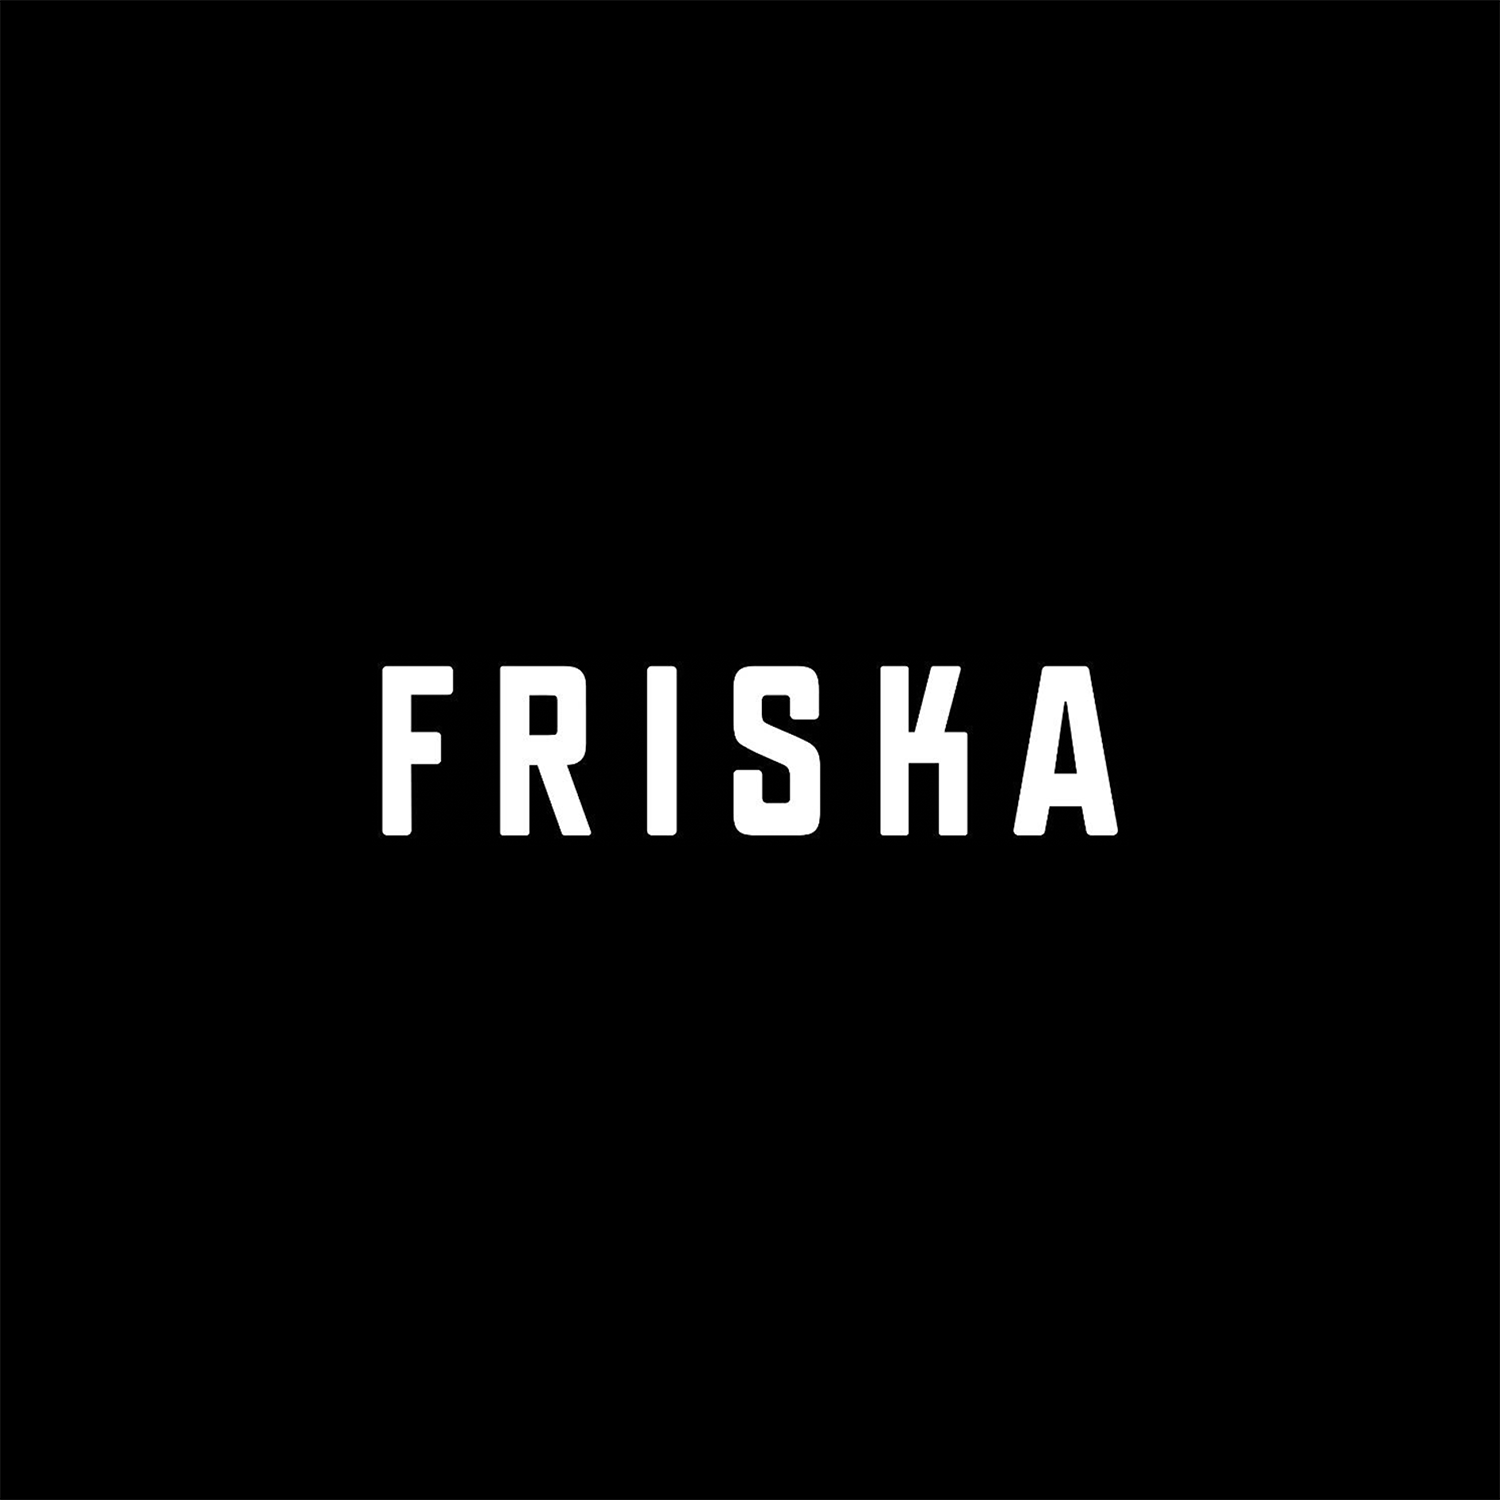 Friska Healthy fast food restaurant chain